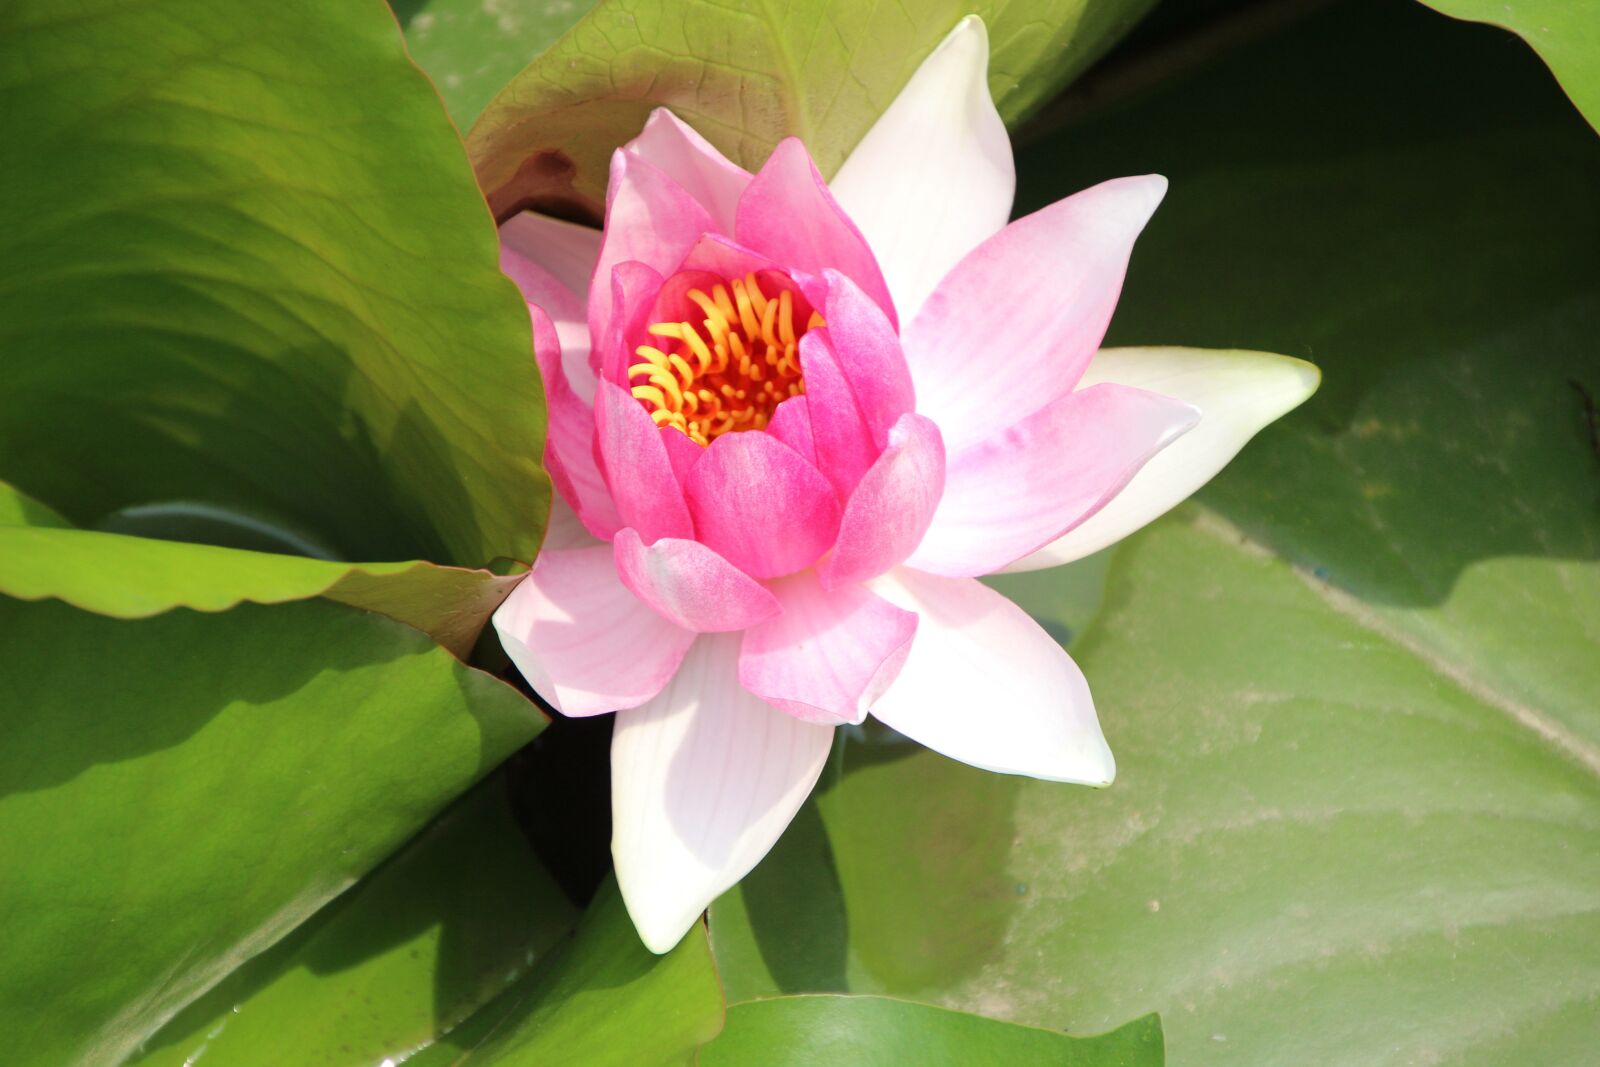 Canon EOS 600D (Rebel EOS T3i / EOS Kiss X5) sample photo. "Plant, lotus, bicolour lotus" photography